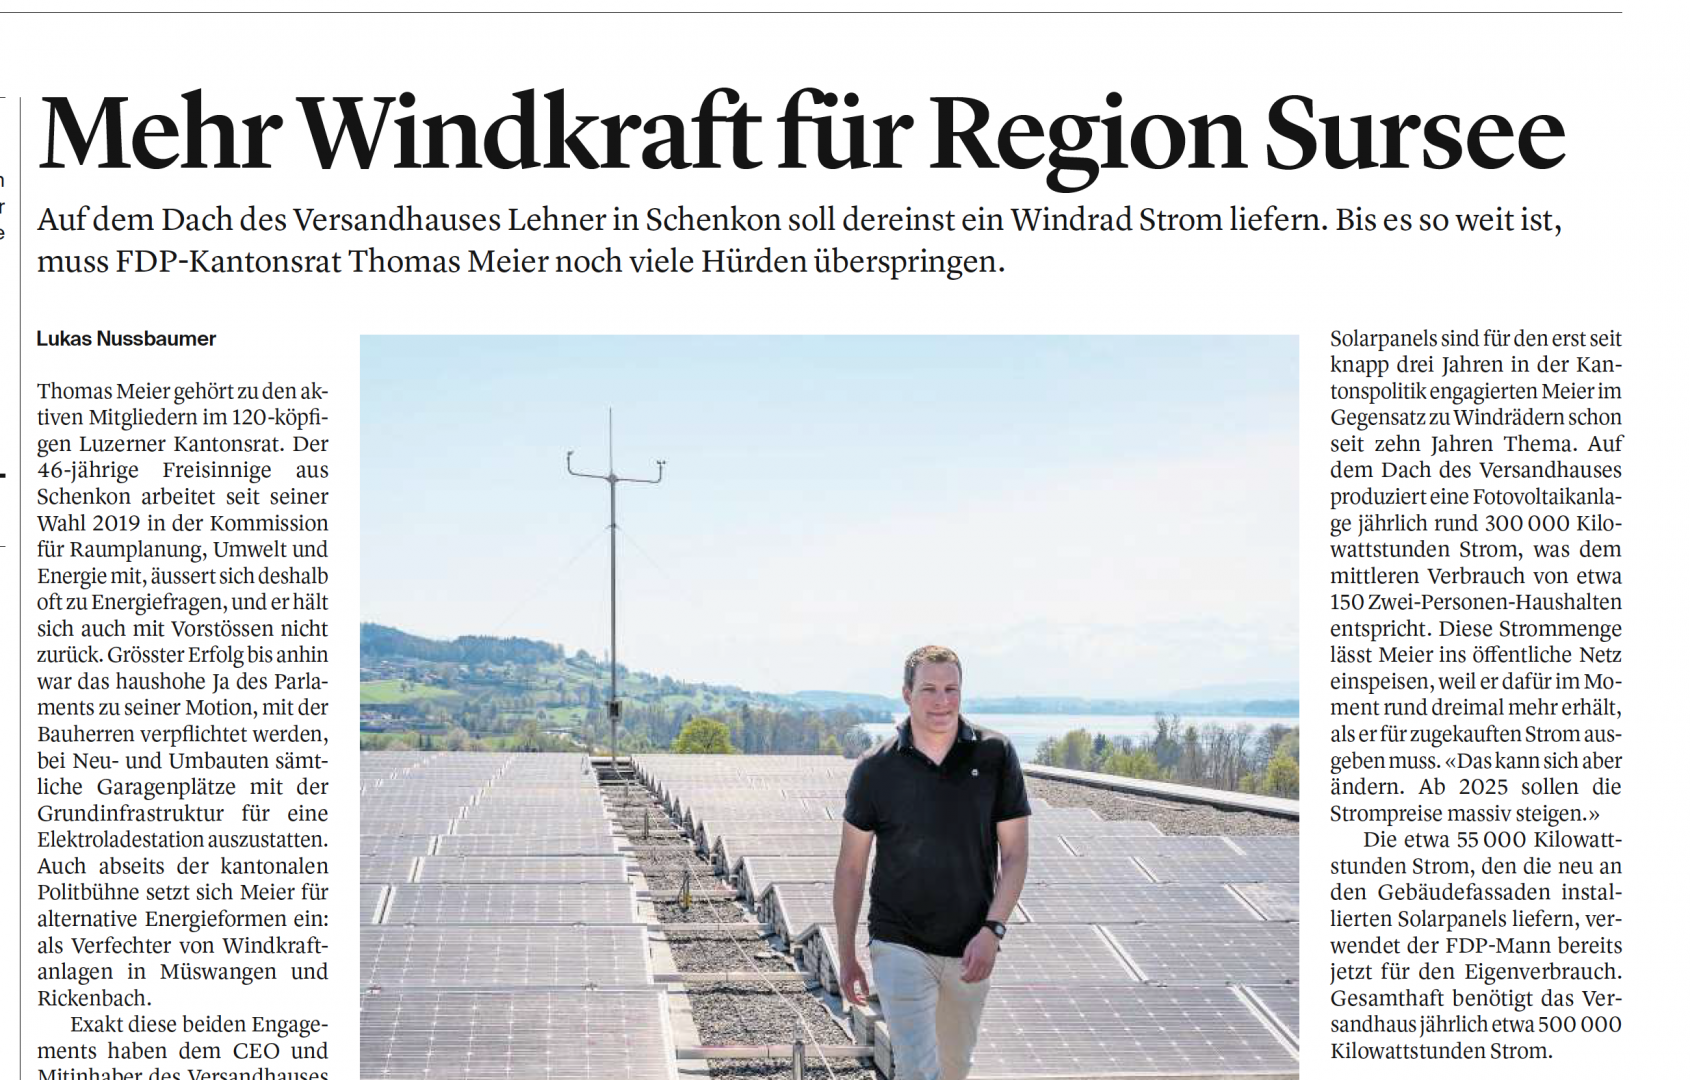 Mehr Windkraft für die Region Sursee